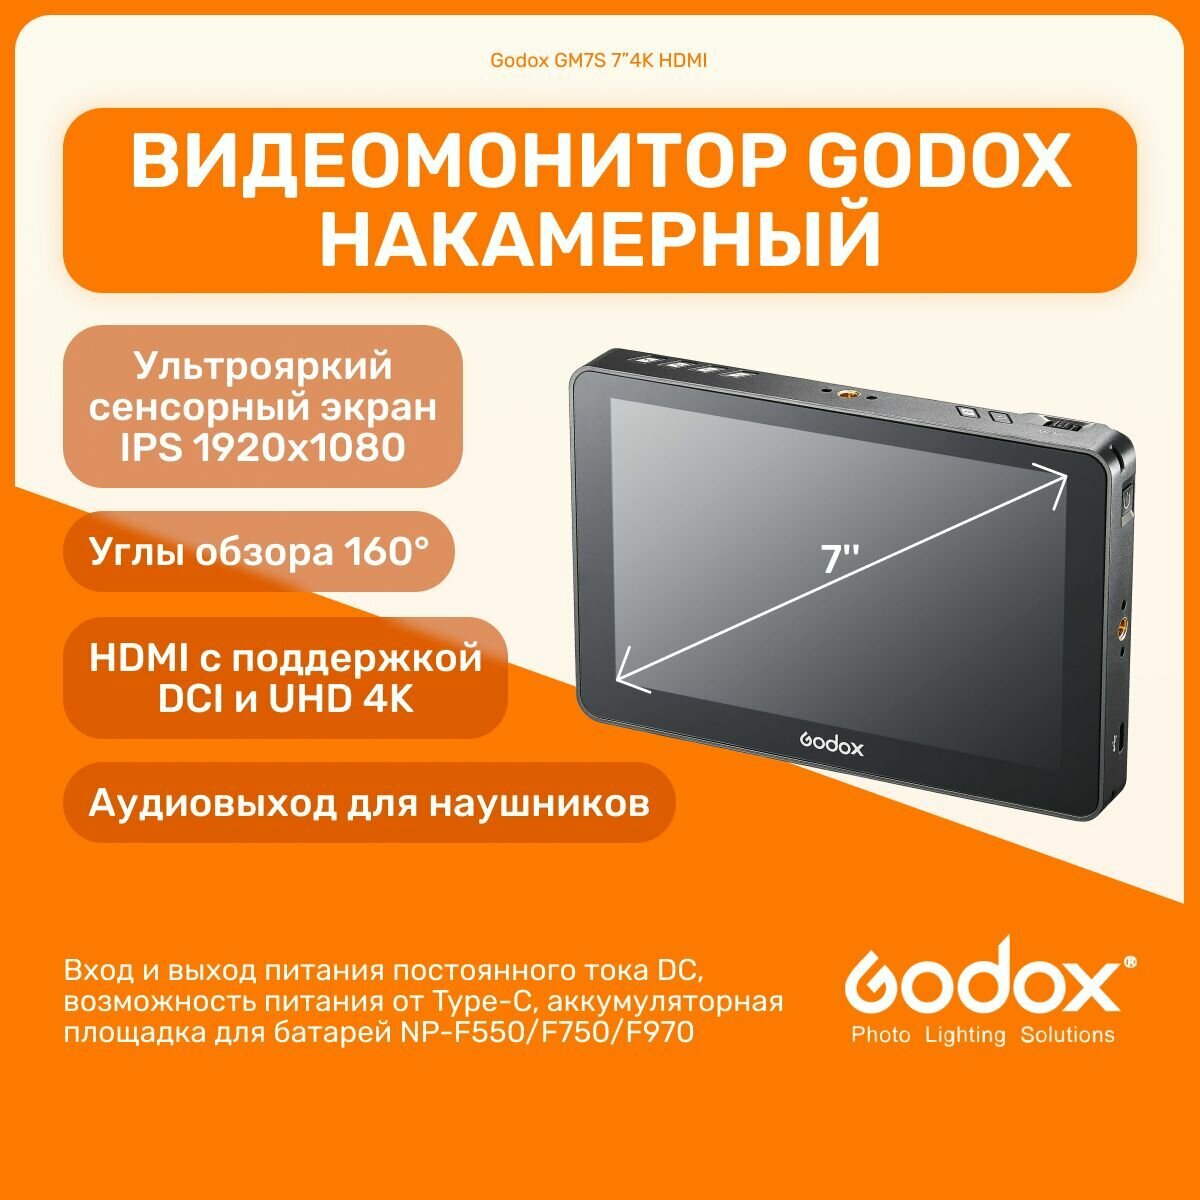 Видеомонитор Godox GM7S 7 4K HDMI накамерный для видеосъемки, портативный монитор для камеры с креплением на башмак